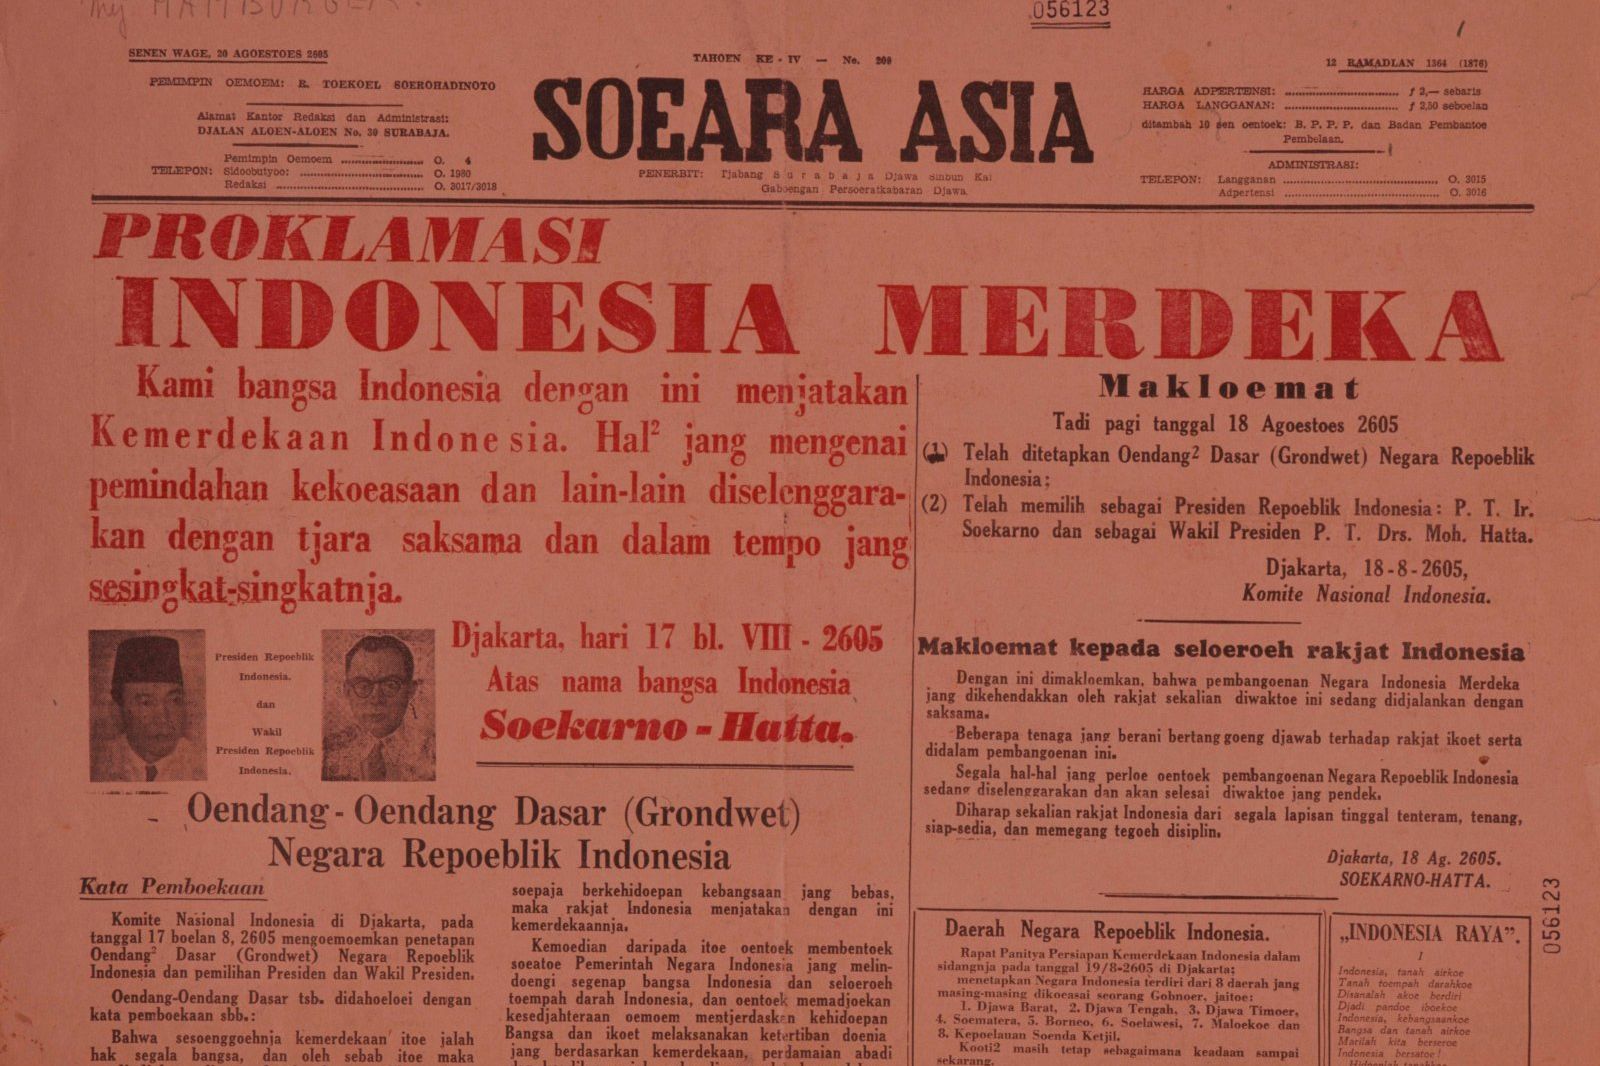 Ragam Reaksi Rakyat Sumatera terhadap Berita Proklamasi Kemerdekaan